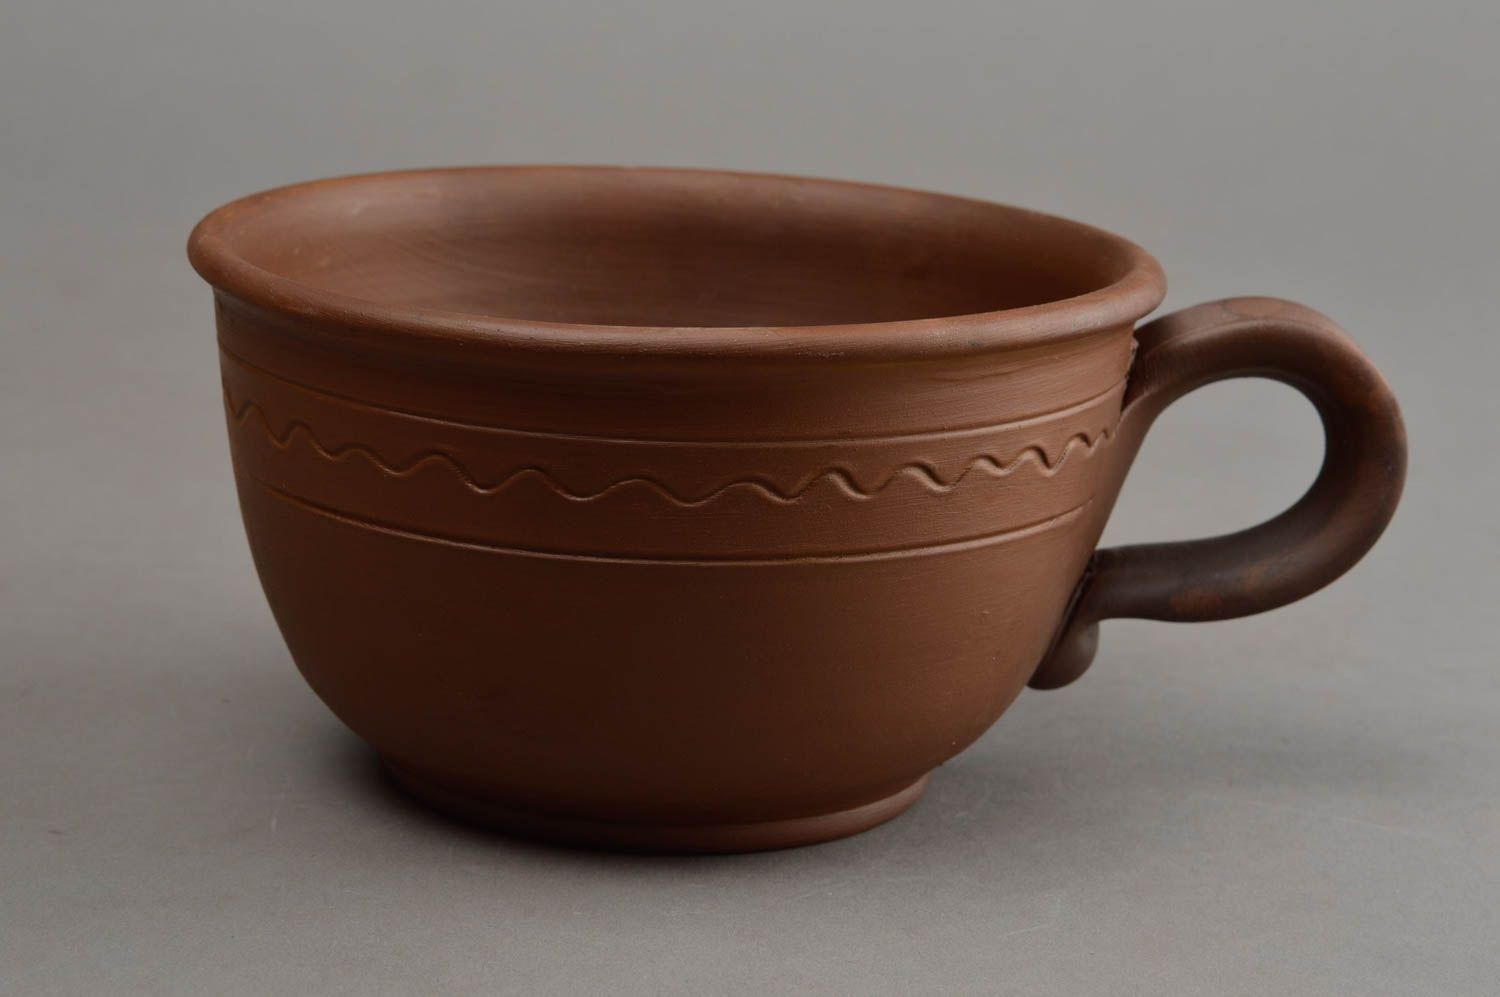 Широкая глиняная чашка ручной работы в технике гончарства красивая коричневая фото 2